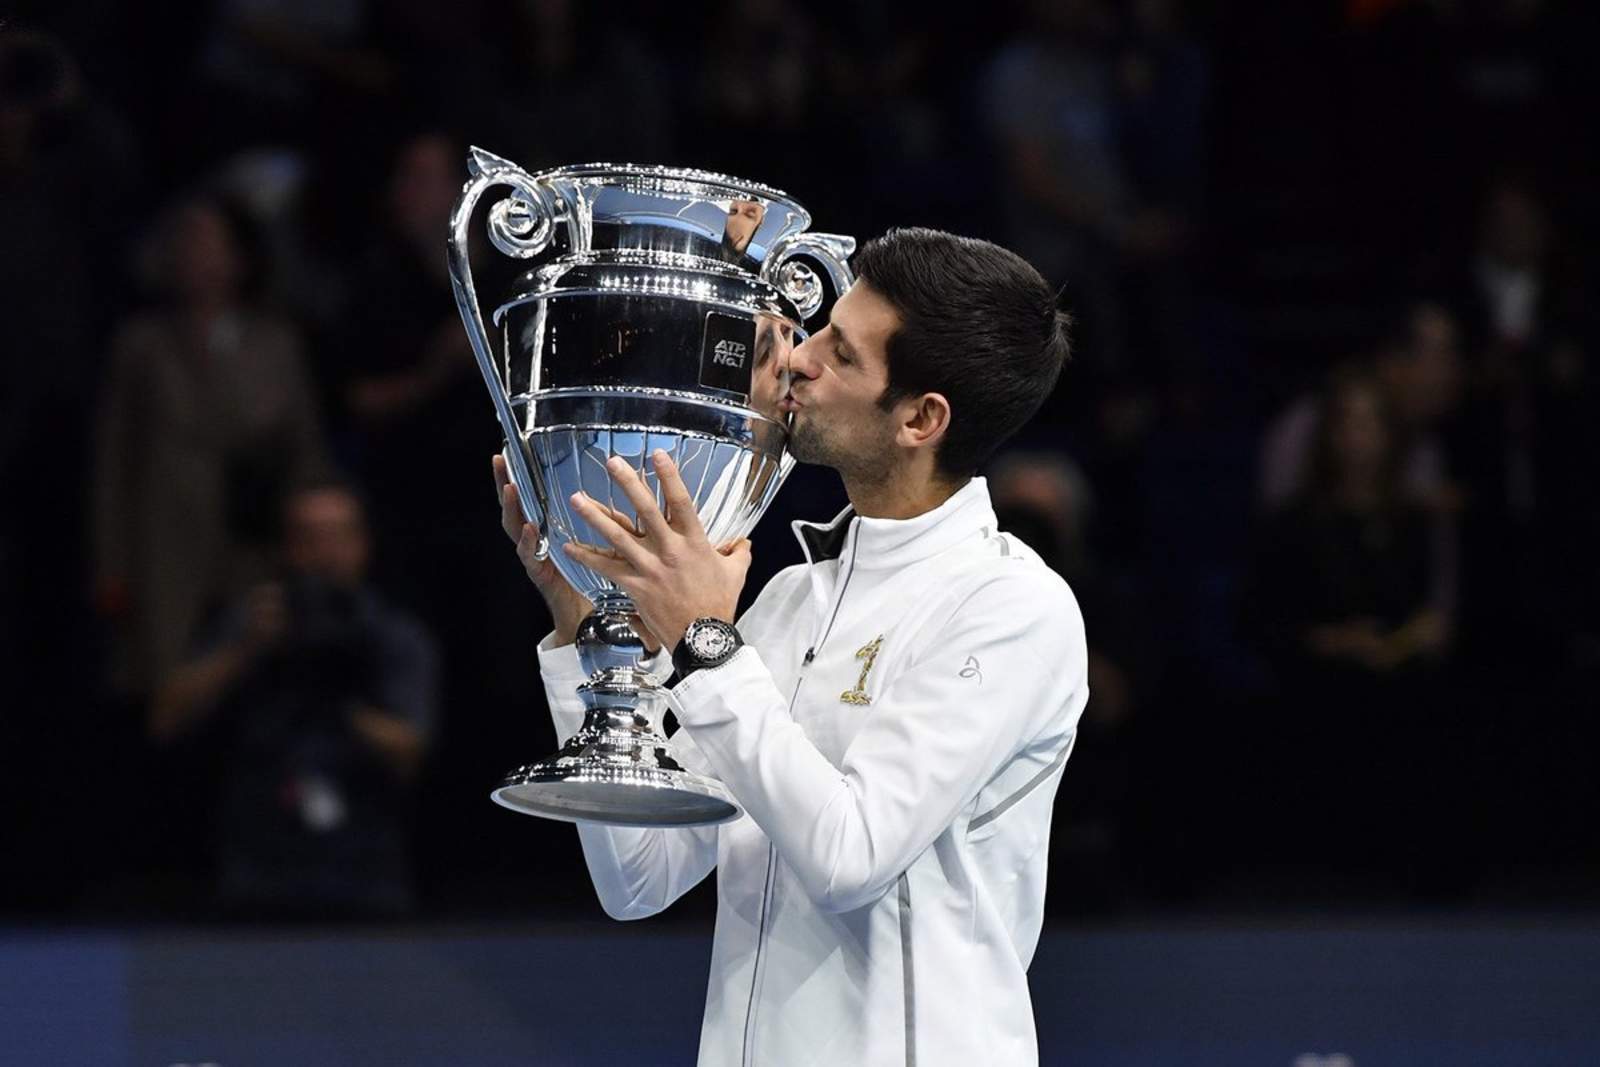 Galardonado el domingo con el trofeo ATP World Tour No 1, que lo acredita como el mejor tenista del año, Djokovic venció en 74 minutos a Isner, quien ingresó al torneo en lugar del español Rafael Nadal. (ESPECIAL)